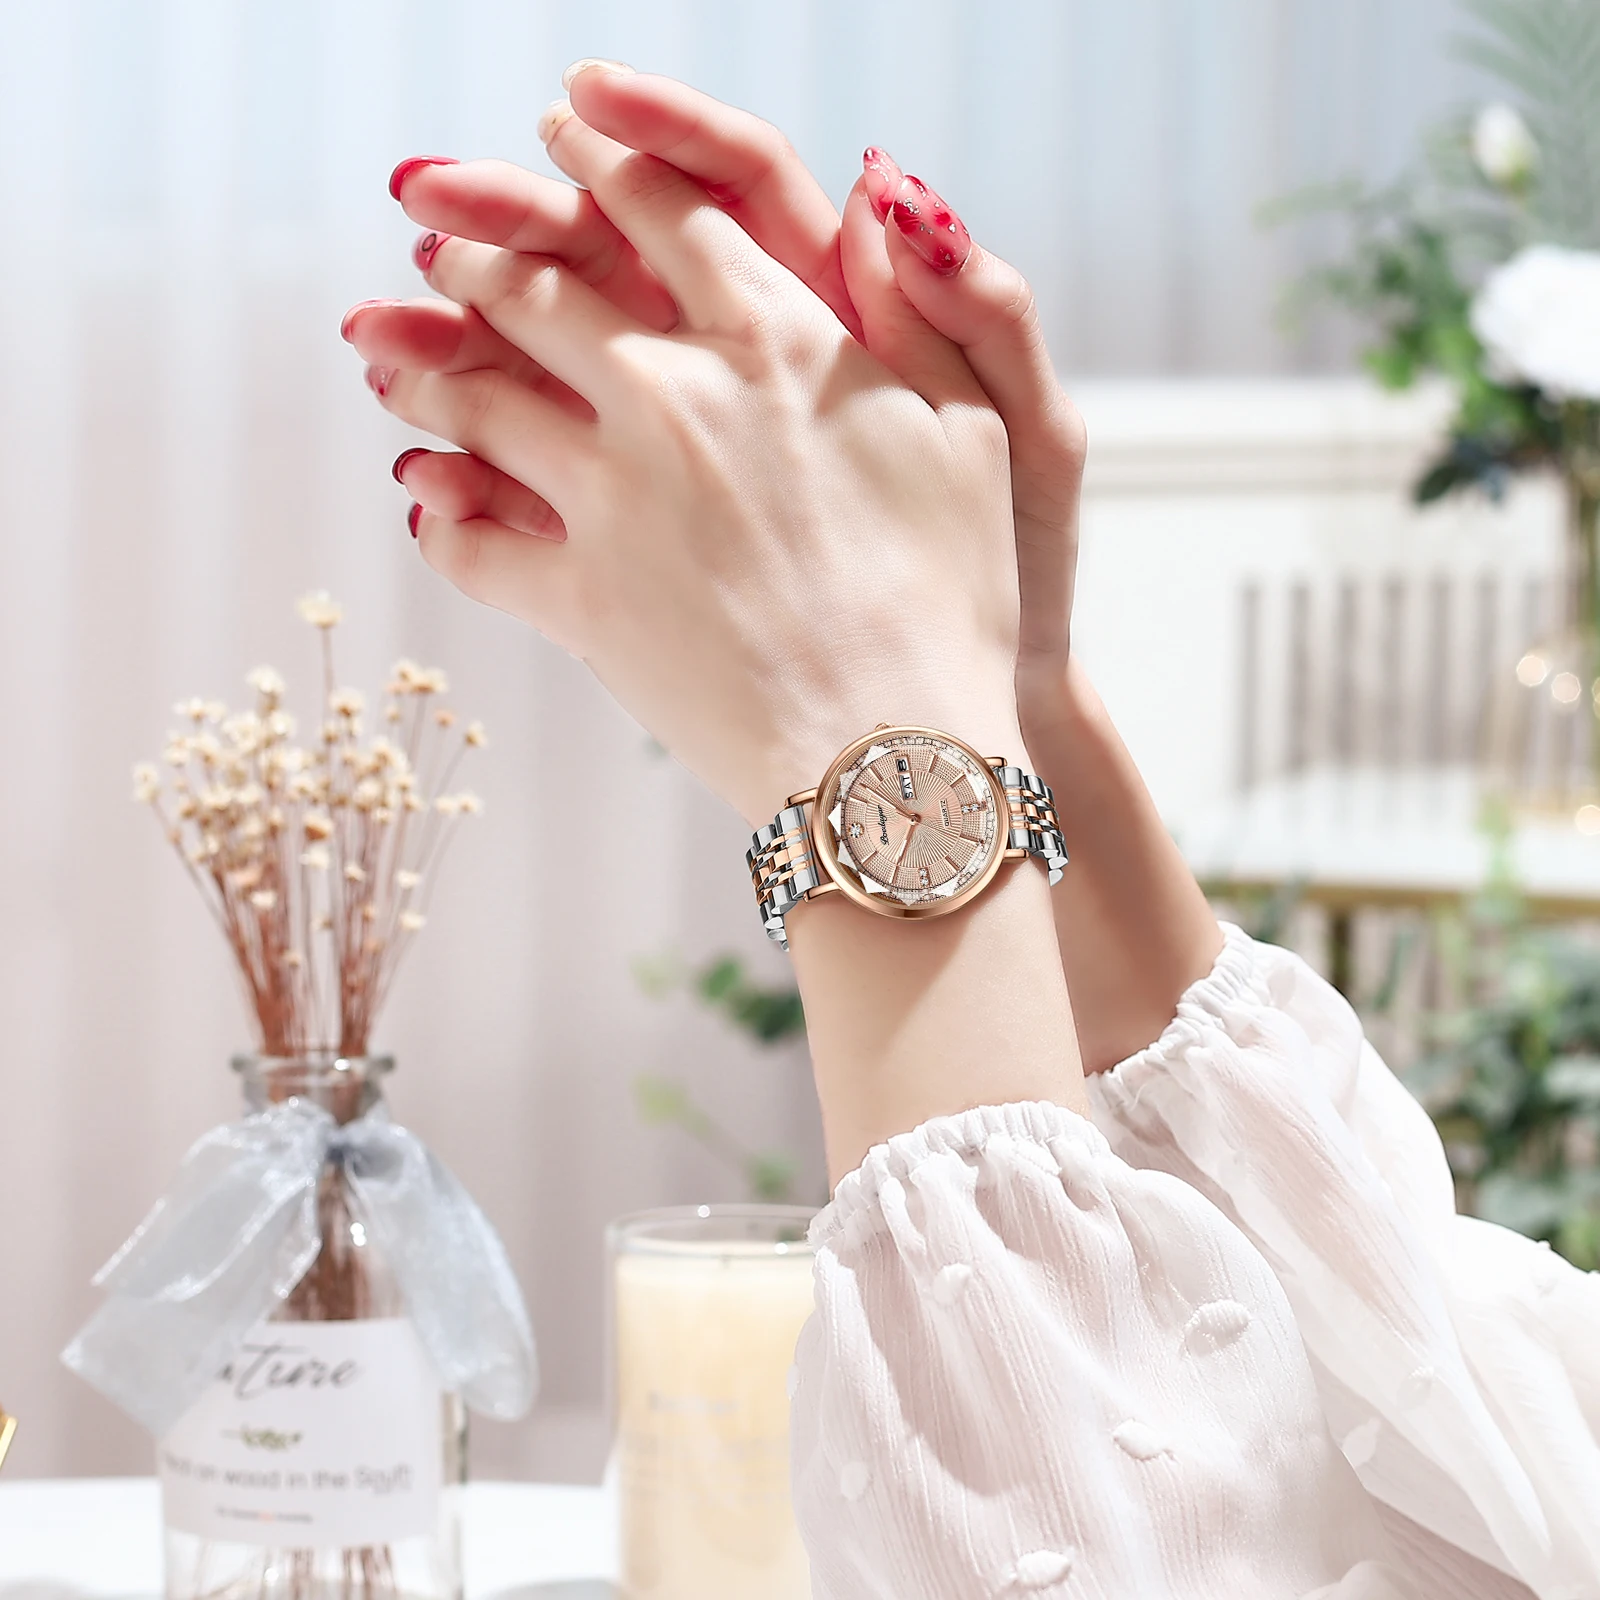 POEDAGAR Women Watch Rose Gold Fashion Quartz Watches Top Brand Luxury Ladies Wristwatch Waterproof Date Week Girlfriend Gift enlarge